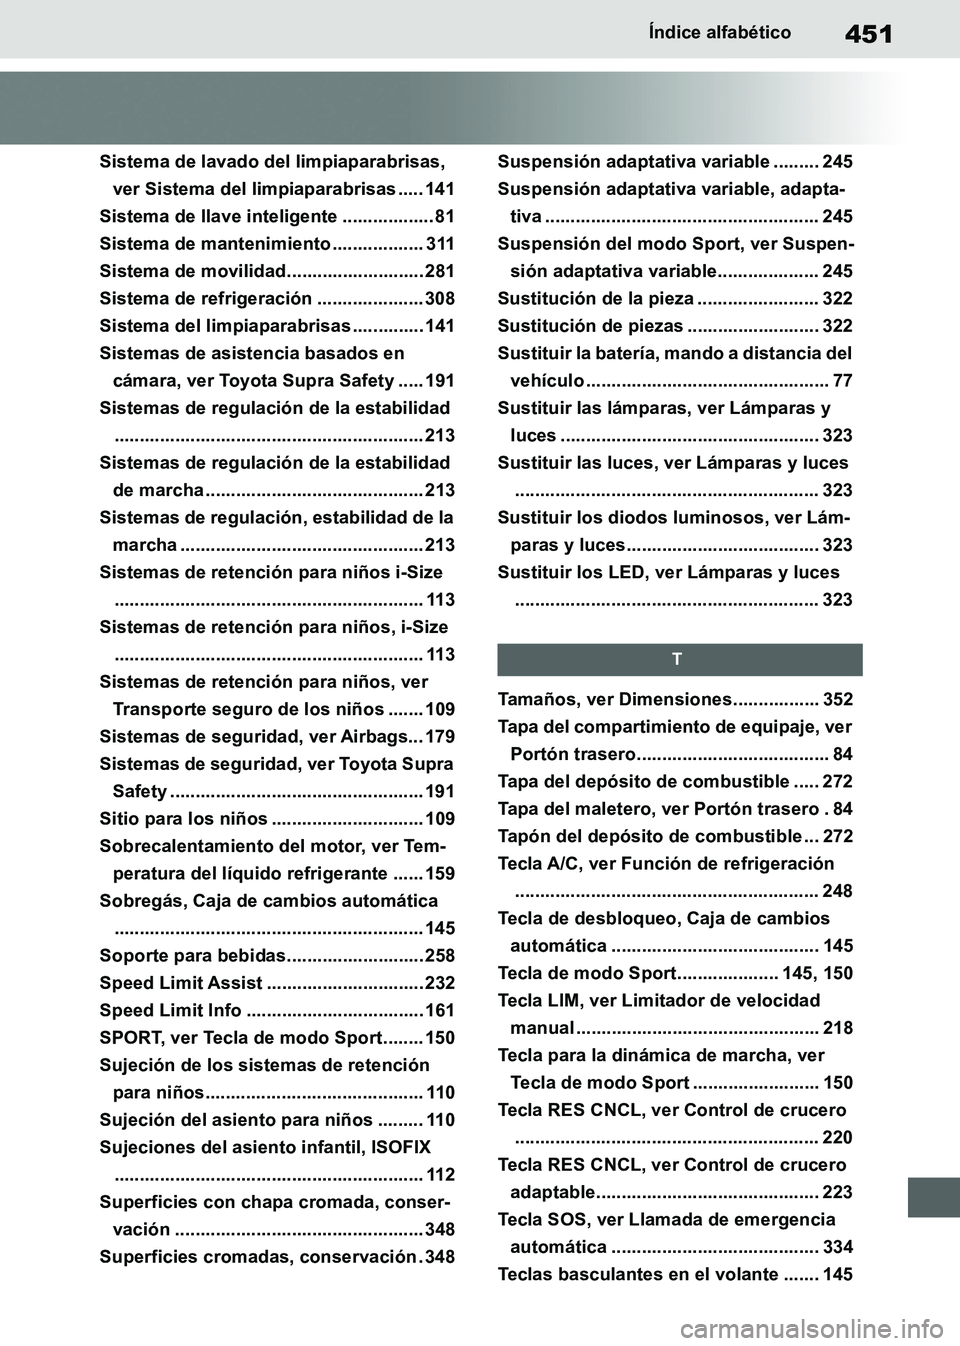 TOYOTA SUPRA 2019  Manuale de Empleo (in Spanish) 451
Supra Owners Manual_ES
Índice alfabético
Sistema de lavado del limpiaparabrisas, 
ver Sistema del limpiaparabrisas ..... 141
Sistema de llave inteligente .................. 81
Sistema de manten